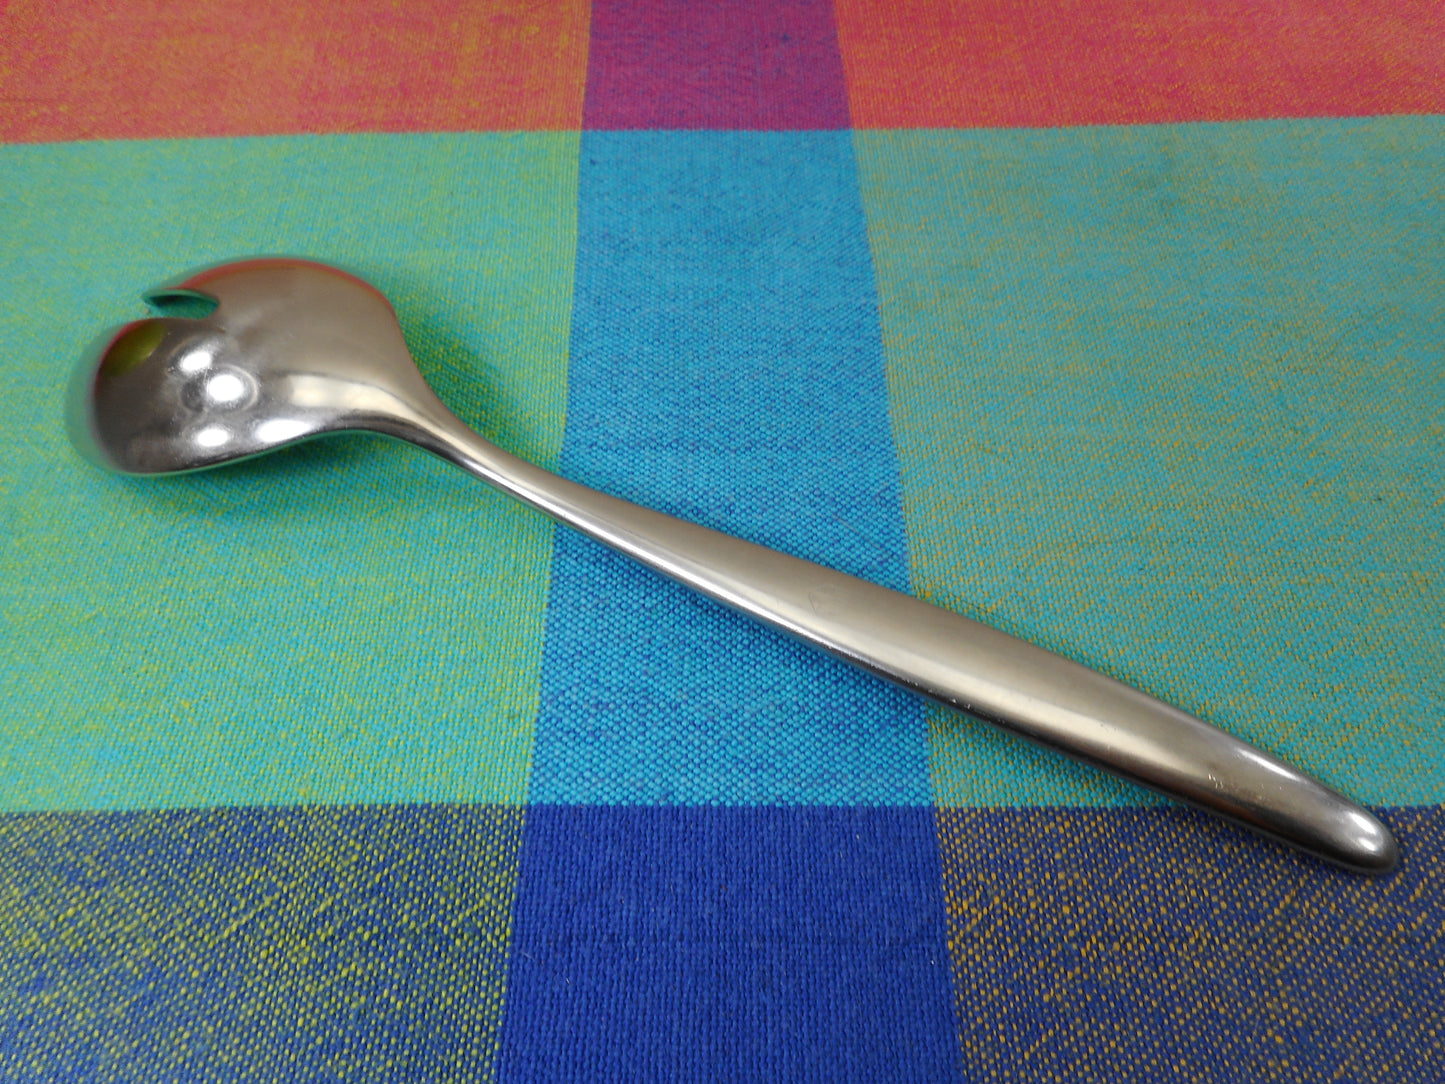 WMF Cromargan Germany Laurel Stainless Flatware - Pierced Table Serving Spoon 7.5" Used Vintage